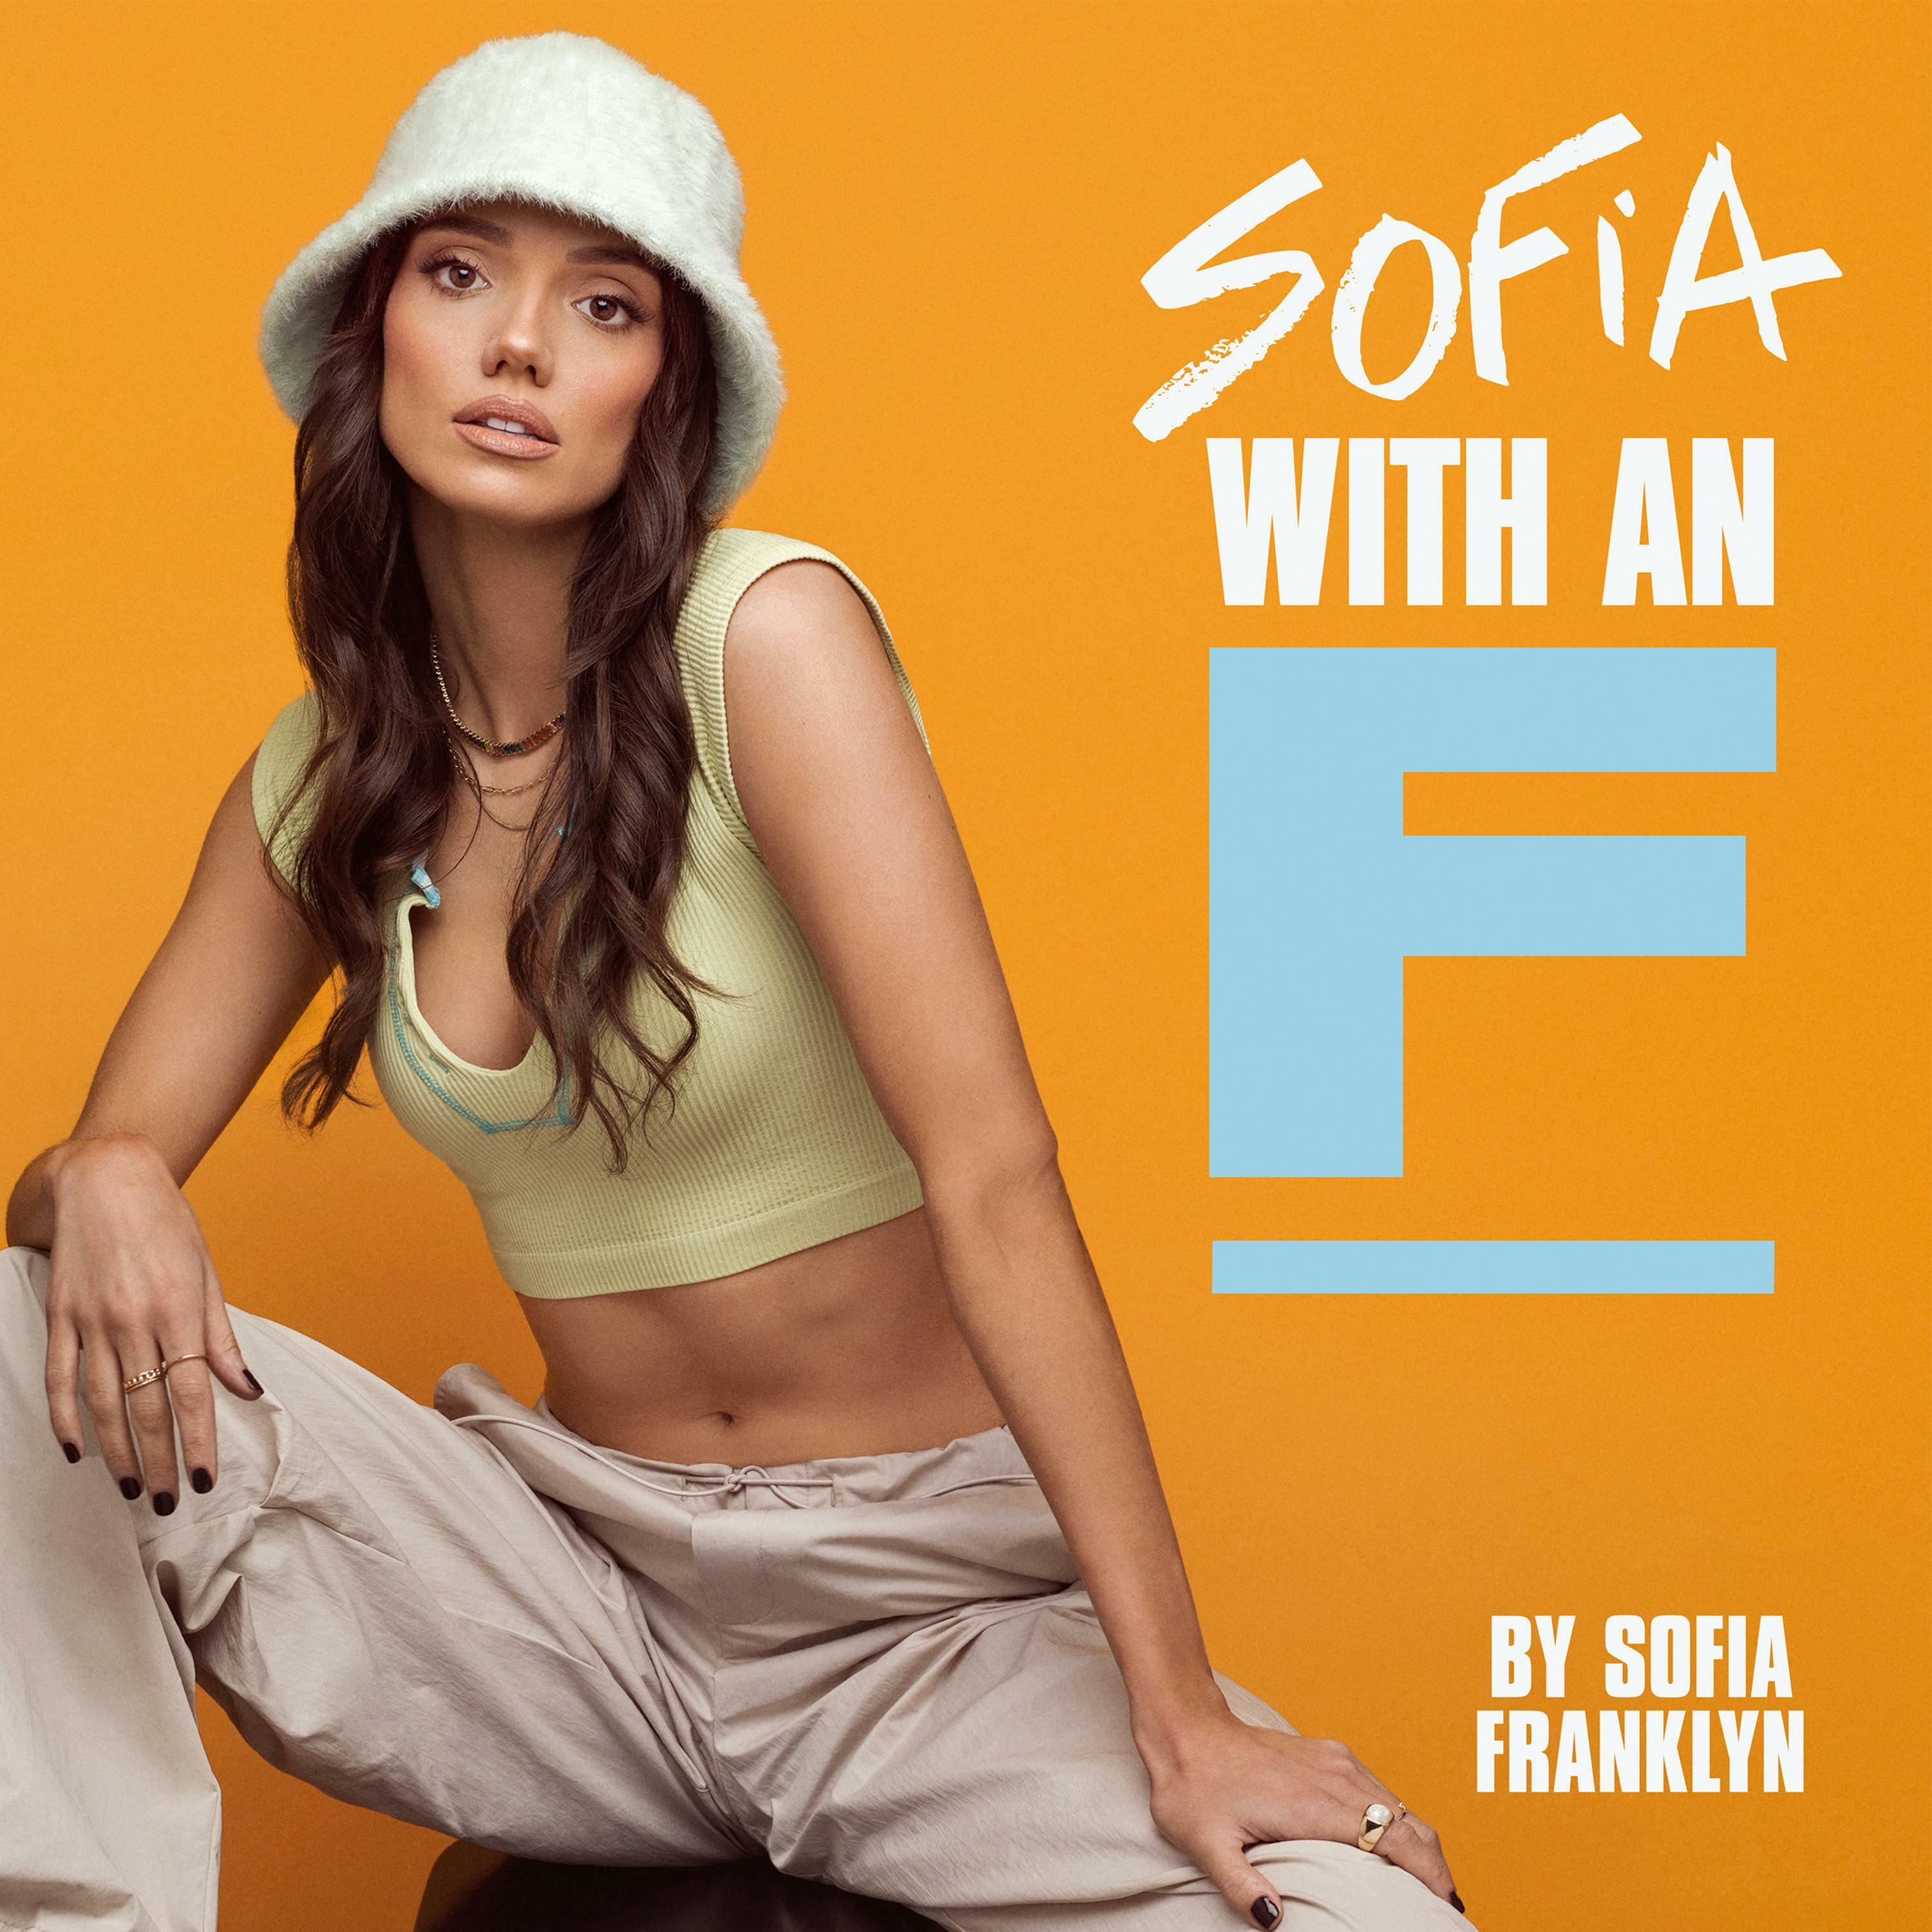 Sofia with an F iHeart photo